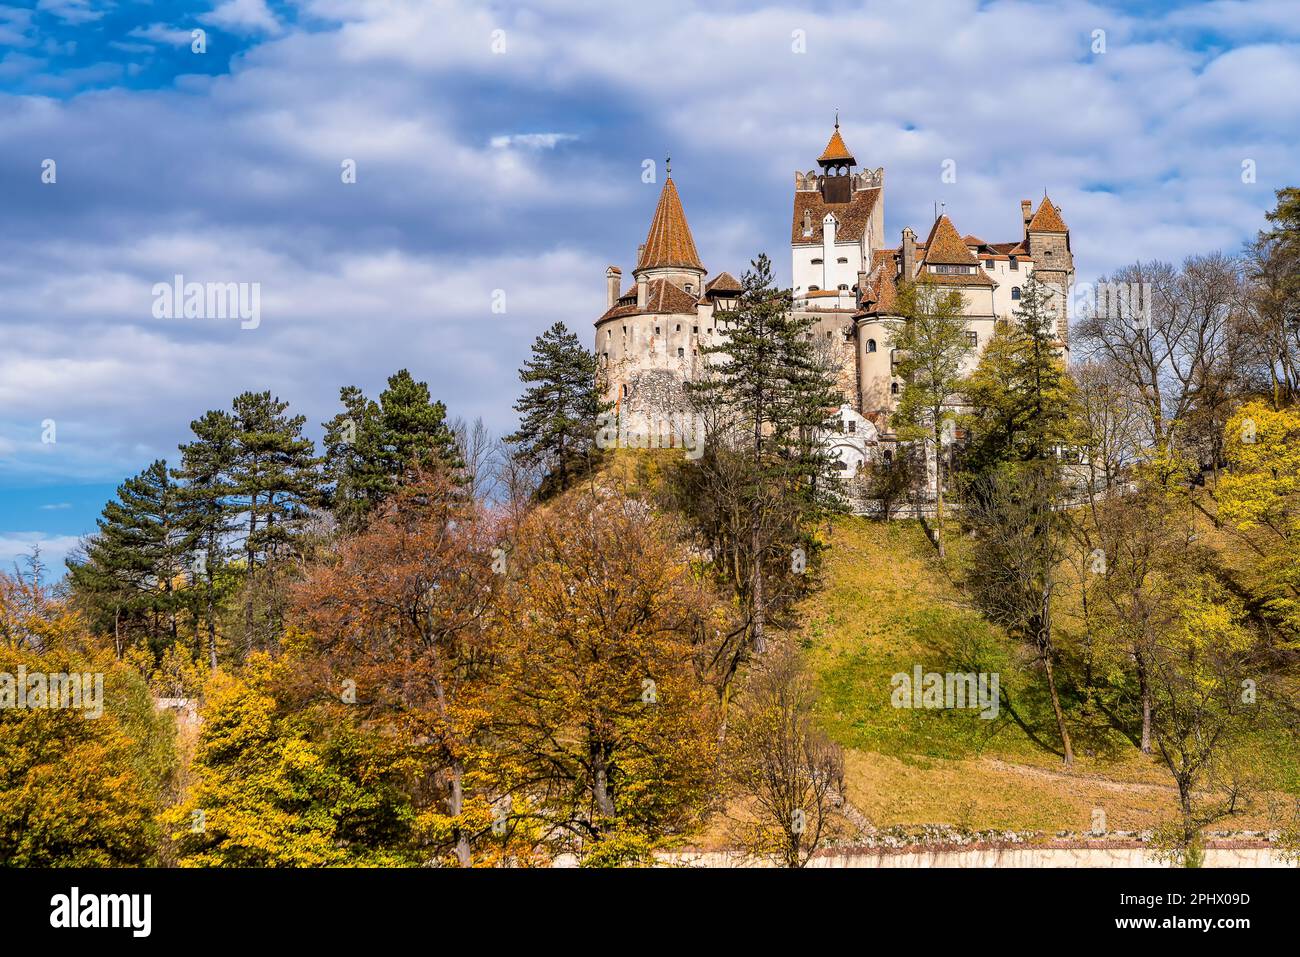 Vue panoramique du château de Bran en Roumanie alias le château de Dracula de Transylvanie dans les couleurs de l'automne contre le ciel dramatique Banque D'Images